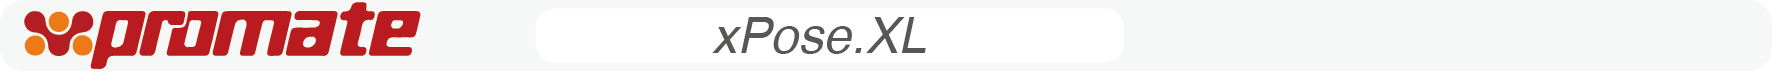 xPose XL